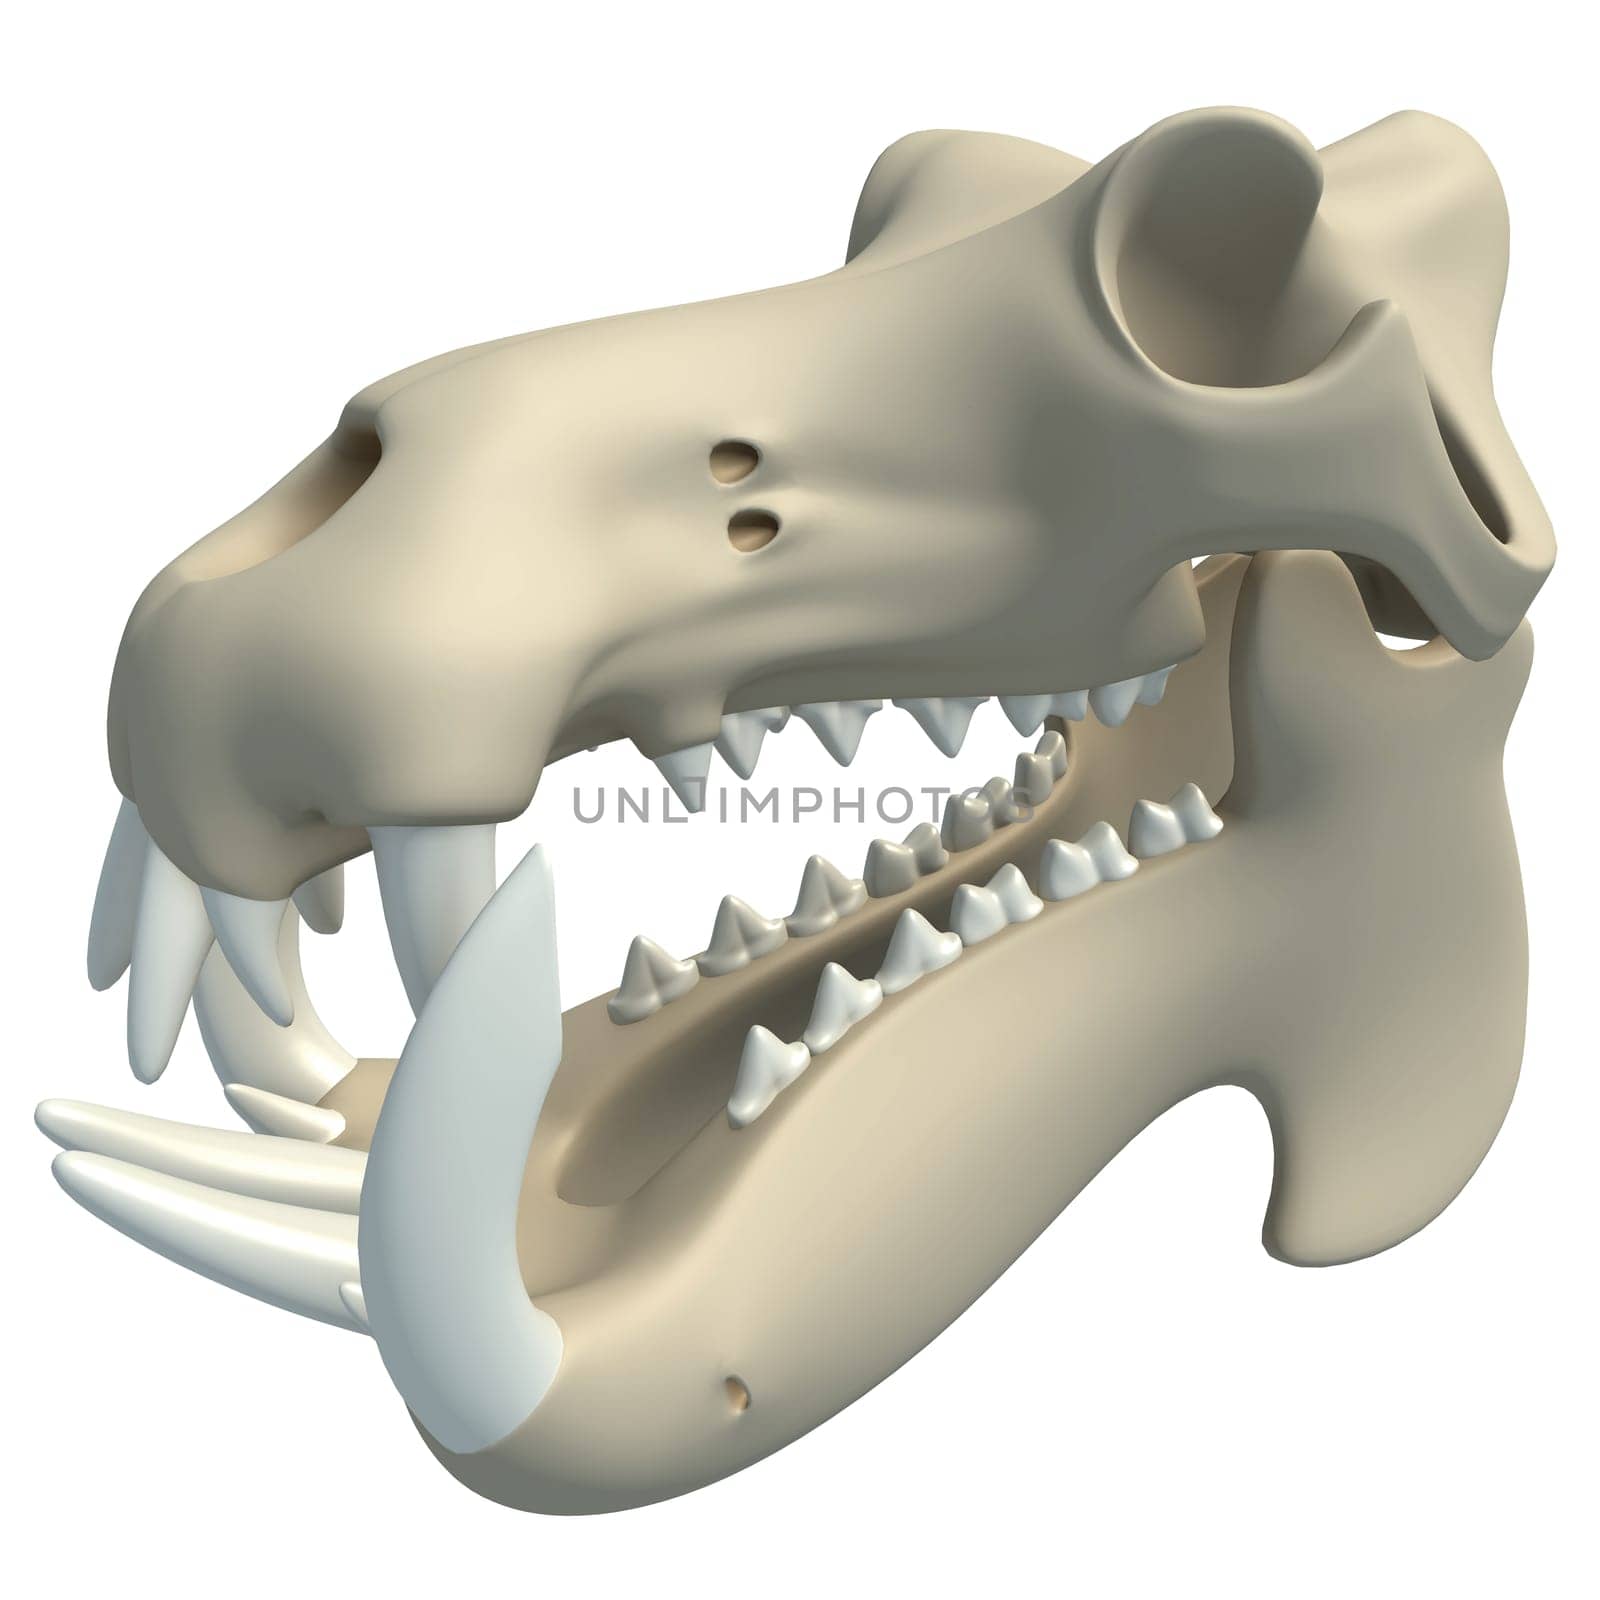 River Horse Hippo Skull animal anatomy 3D rendering model on white background